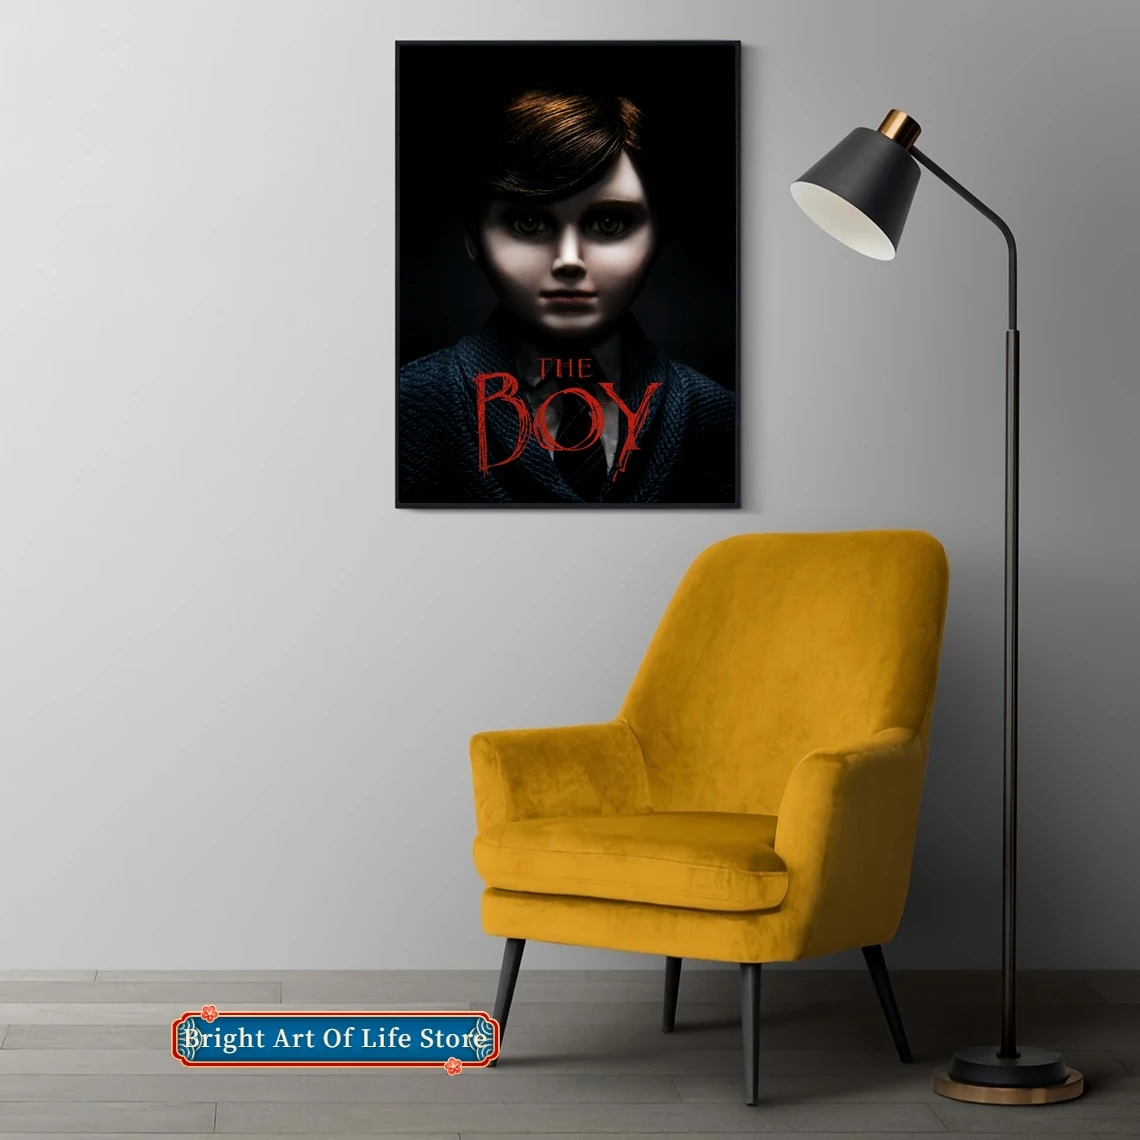 

The Boy (2016) классический фильм плакат покрытие фото холст печать квартира домашний декор настенная живопись (без рамки)